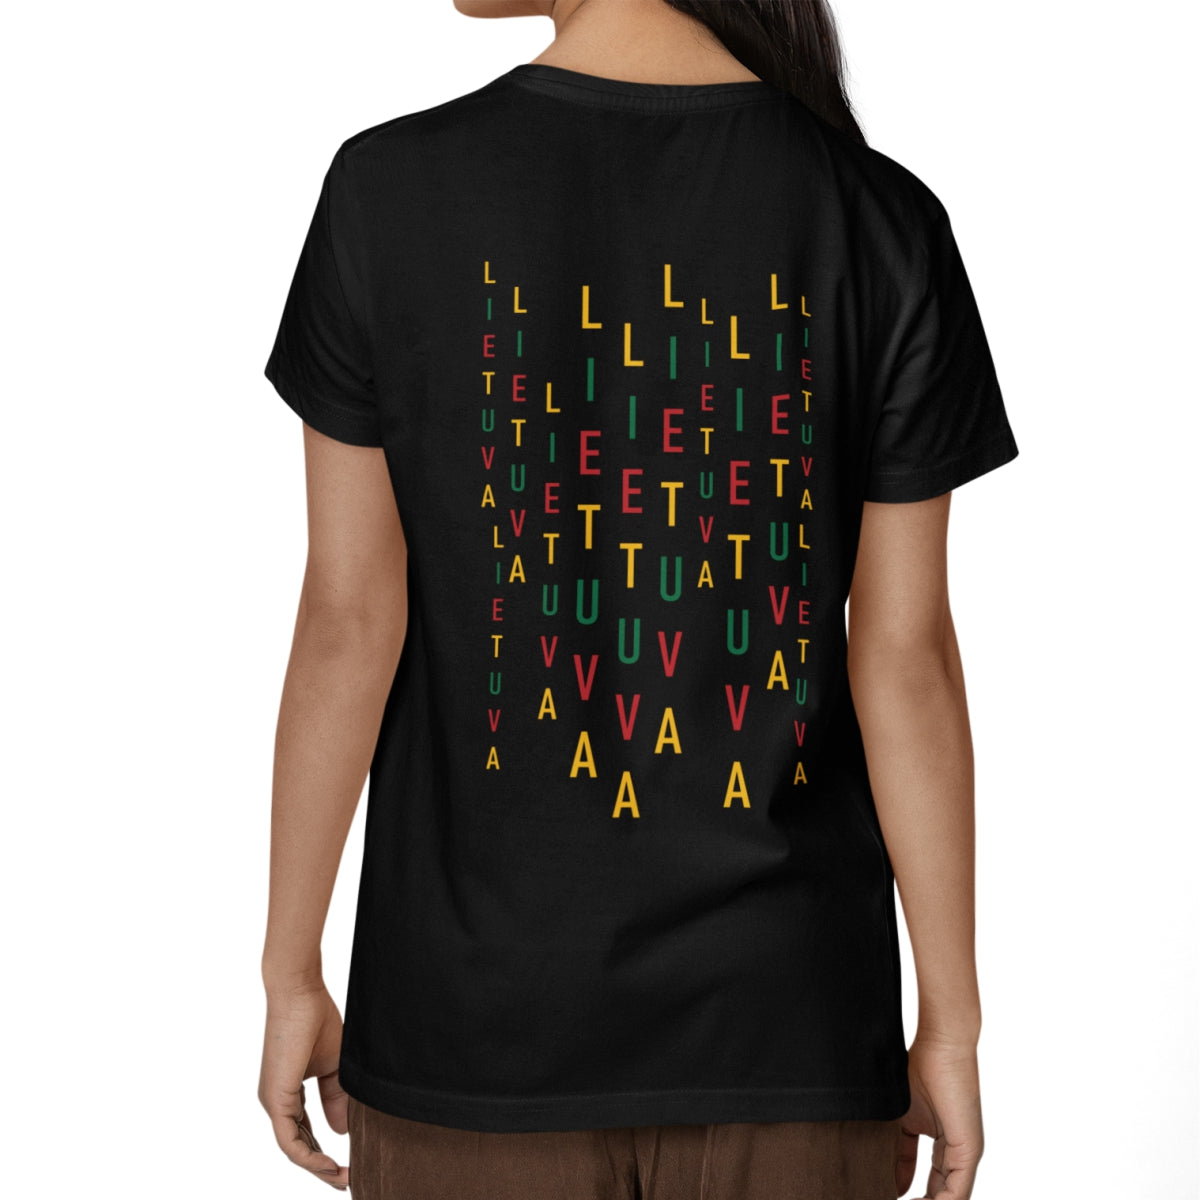 Juodi UNISEX marškinėliai su spauda ant nugaros  "Lietuvos raidžių lietus“